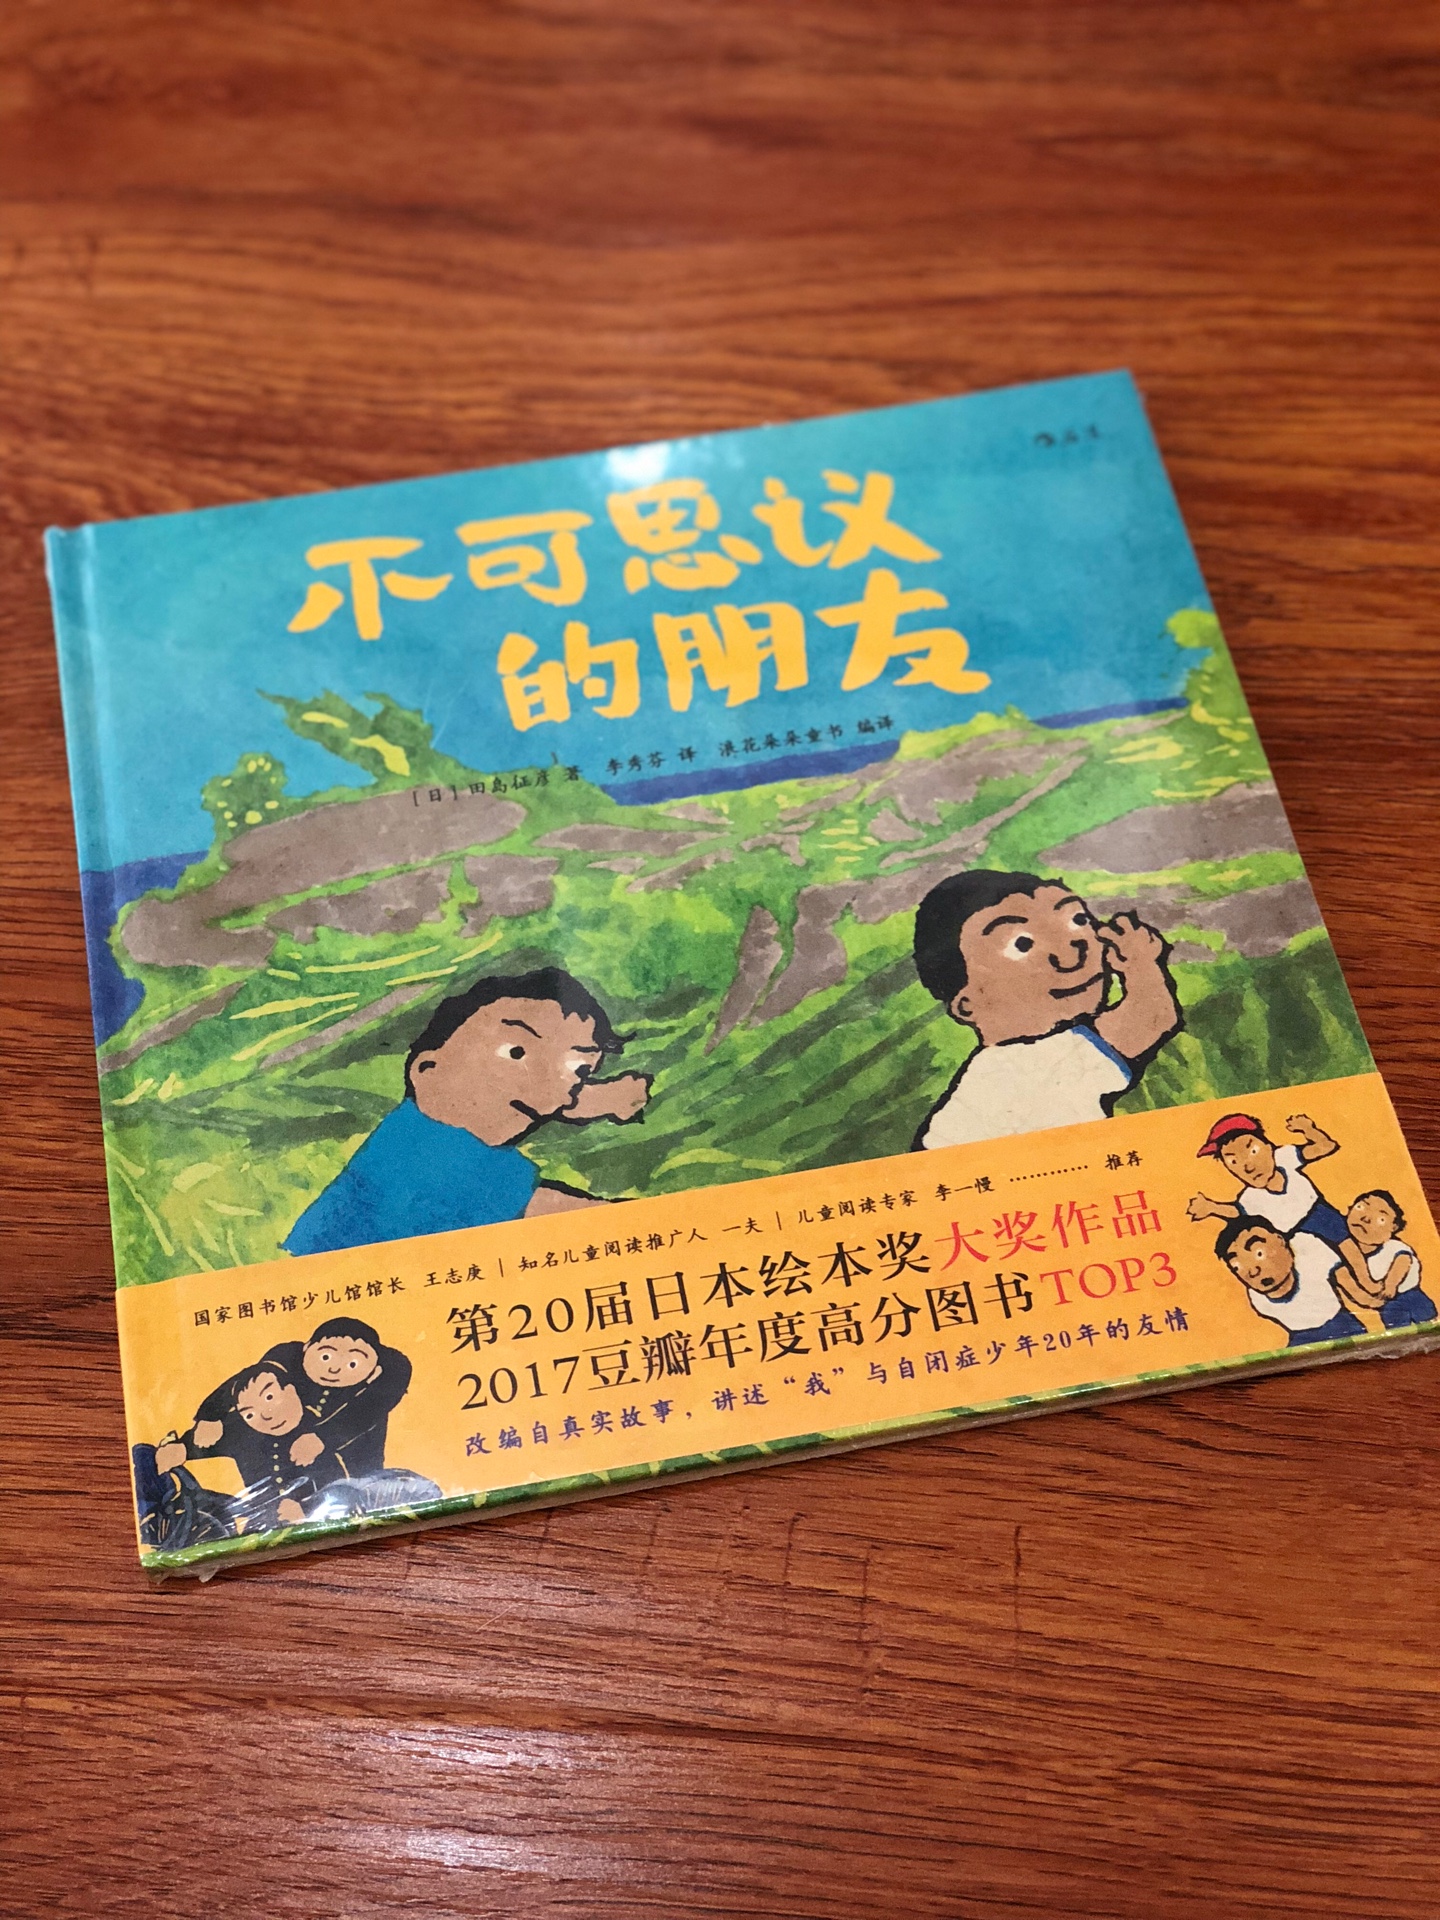 廖廖数语，讲述的是一个很温情的故事。孩子还没读，希望他读的时候，也会感受到这其中的温情。